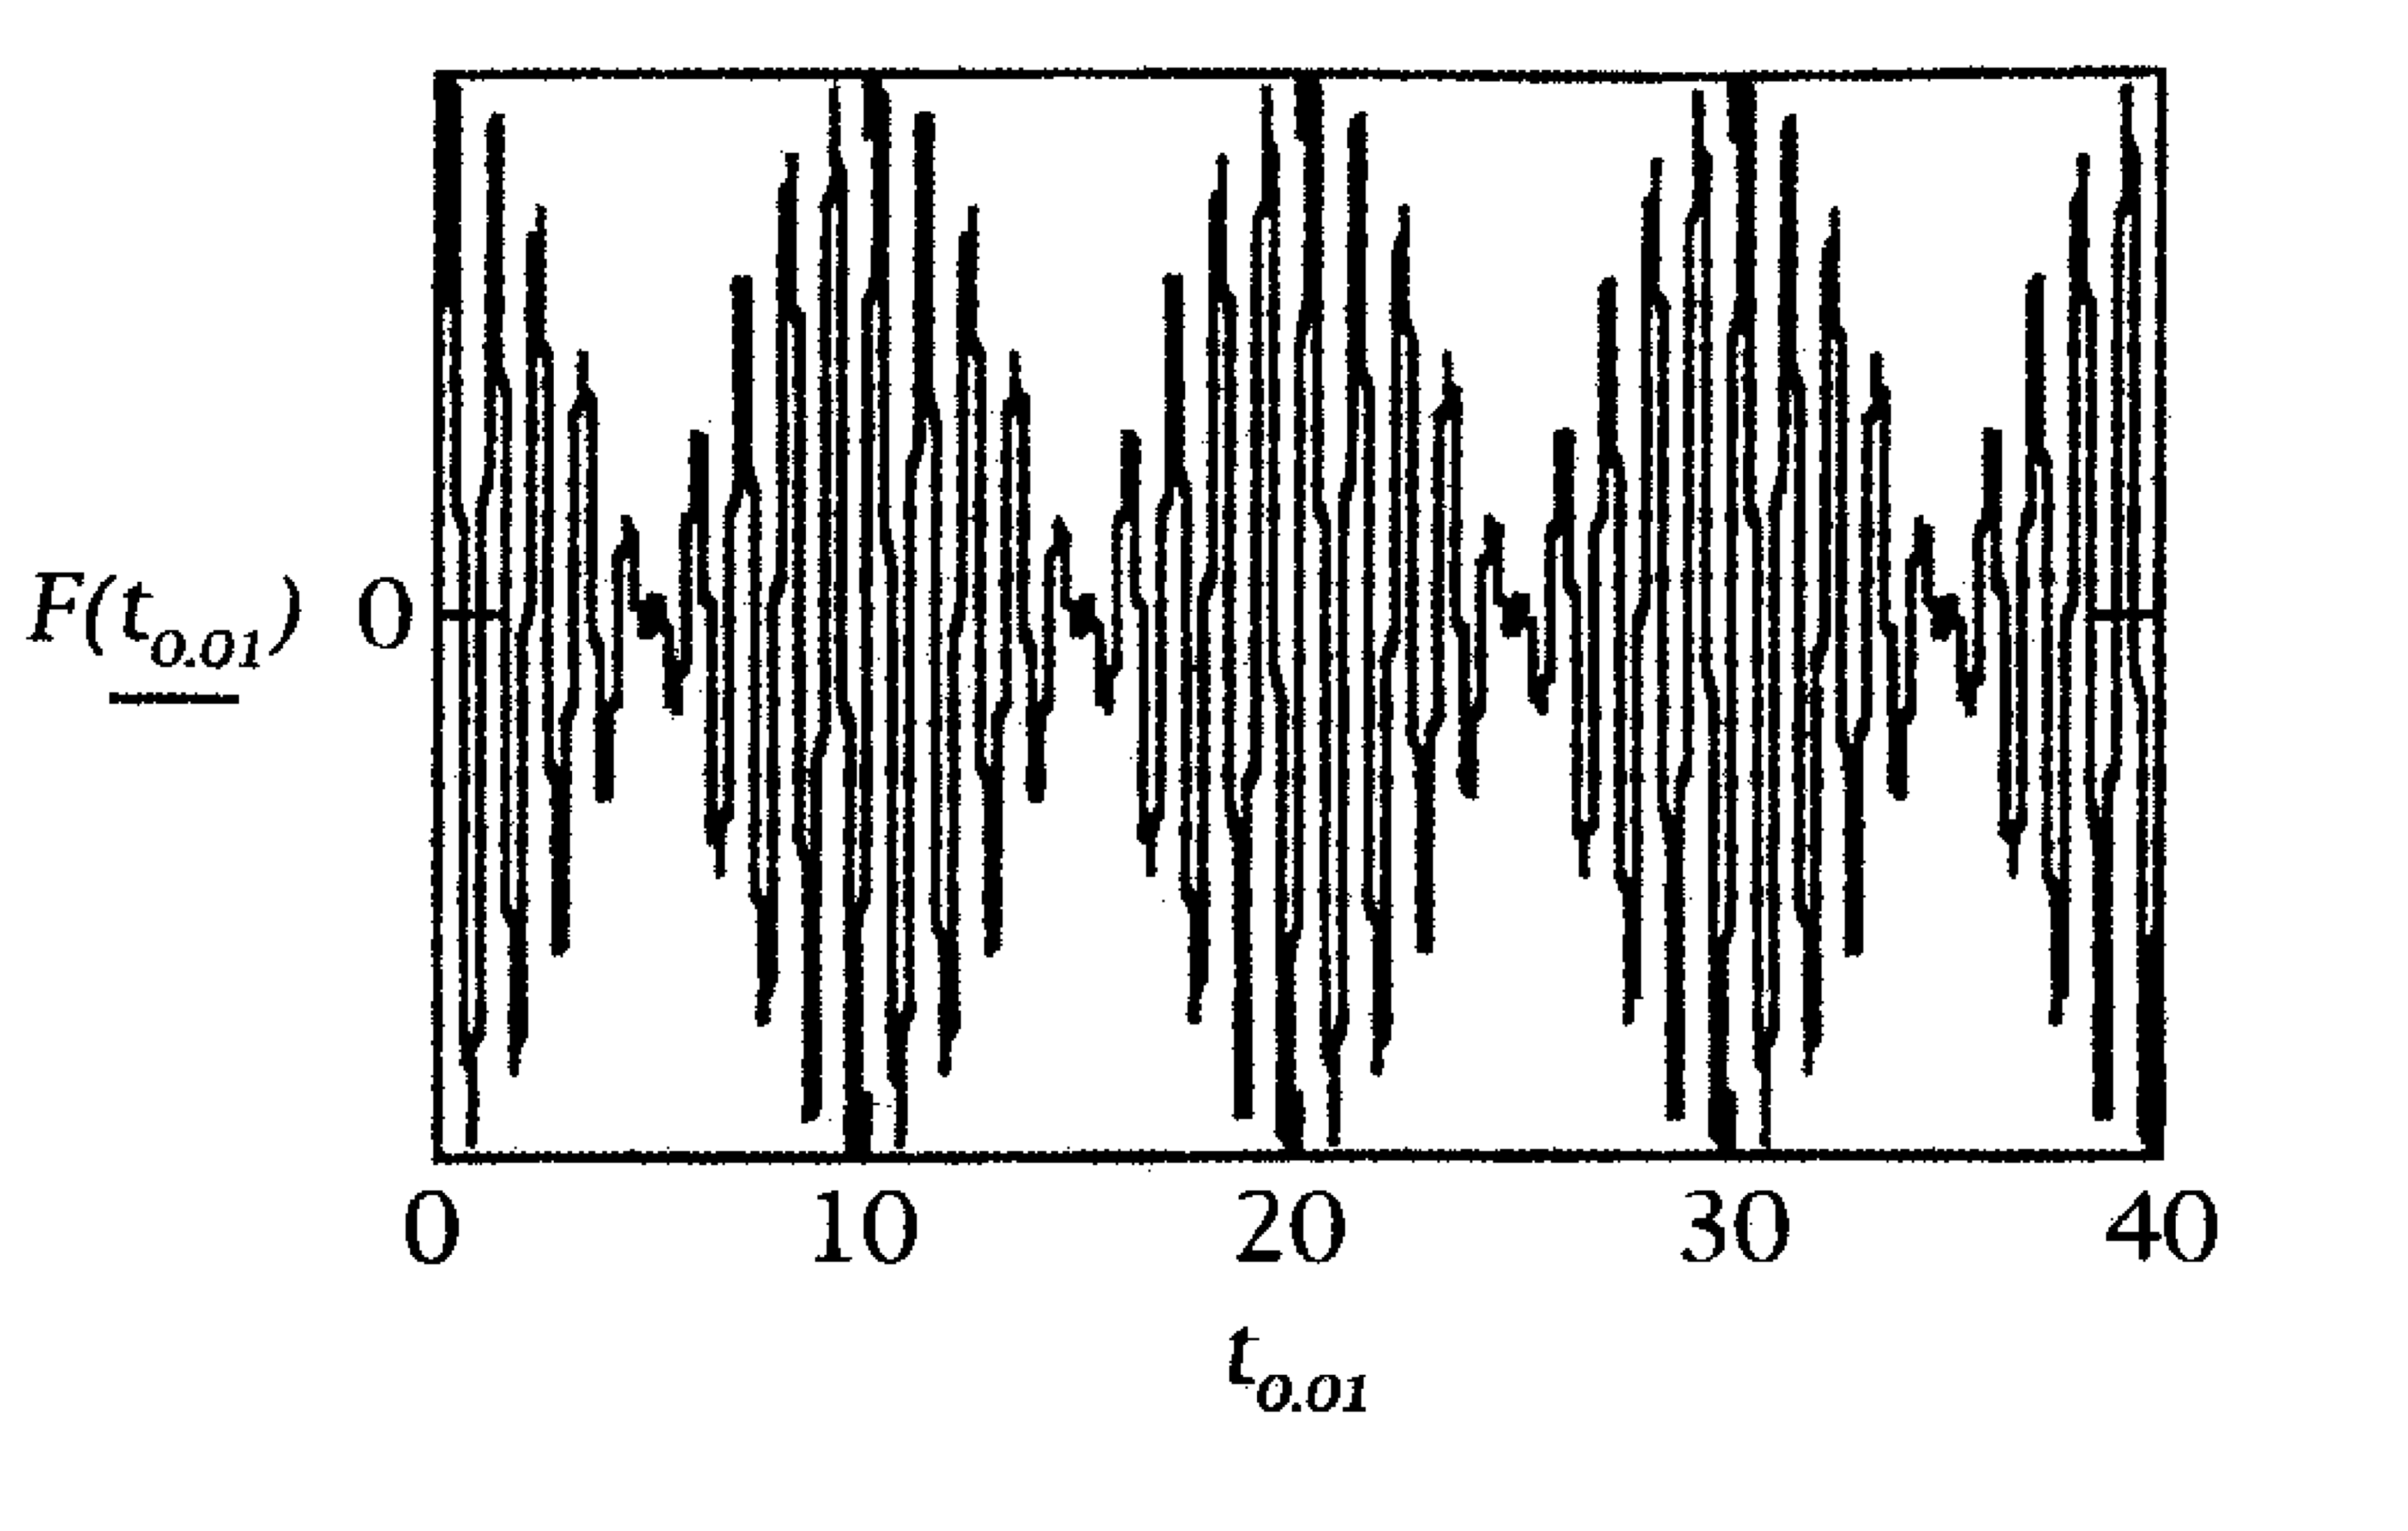 Παράδειγμα συνέχεια... Τα πρώτα δεδομένα σχεδιάζονται με χρόνο δειγματοληψίας μεταξύ δύο δειγμάτων 0.01 sec (ρυθμός δειγματοληψίας 100 Hz), παρέχοντας μια επαρκή απεικόνιση της κυματομορφή.